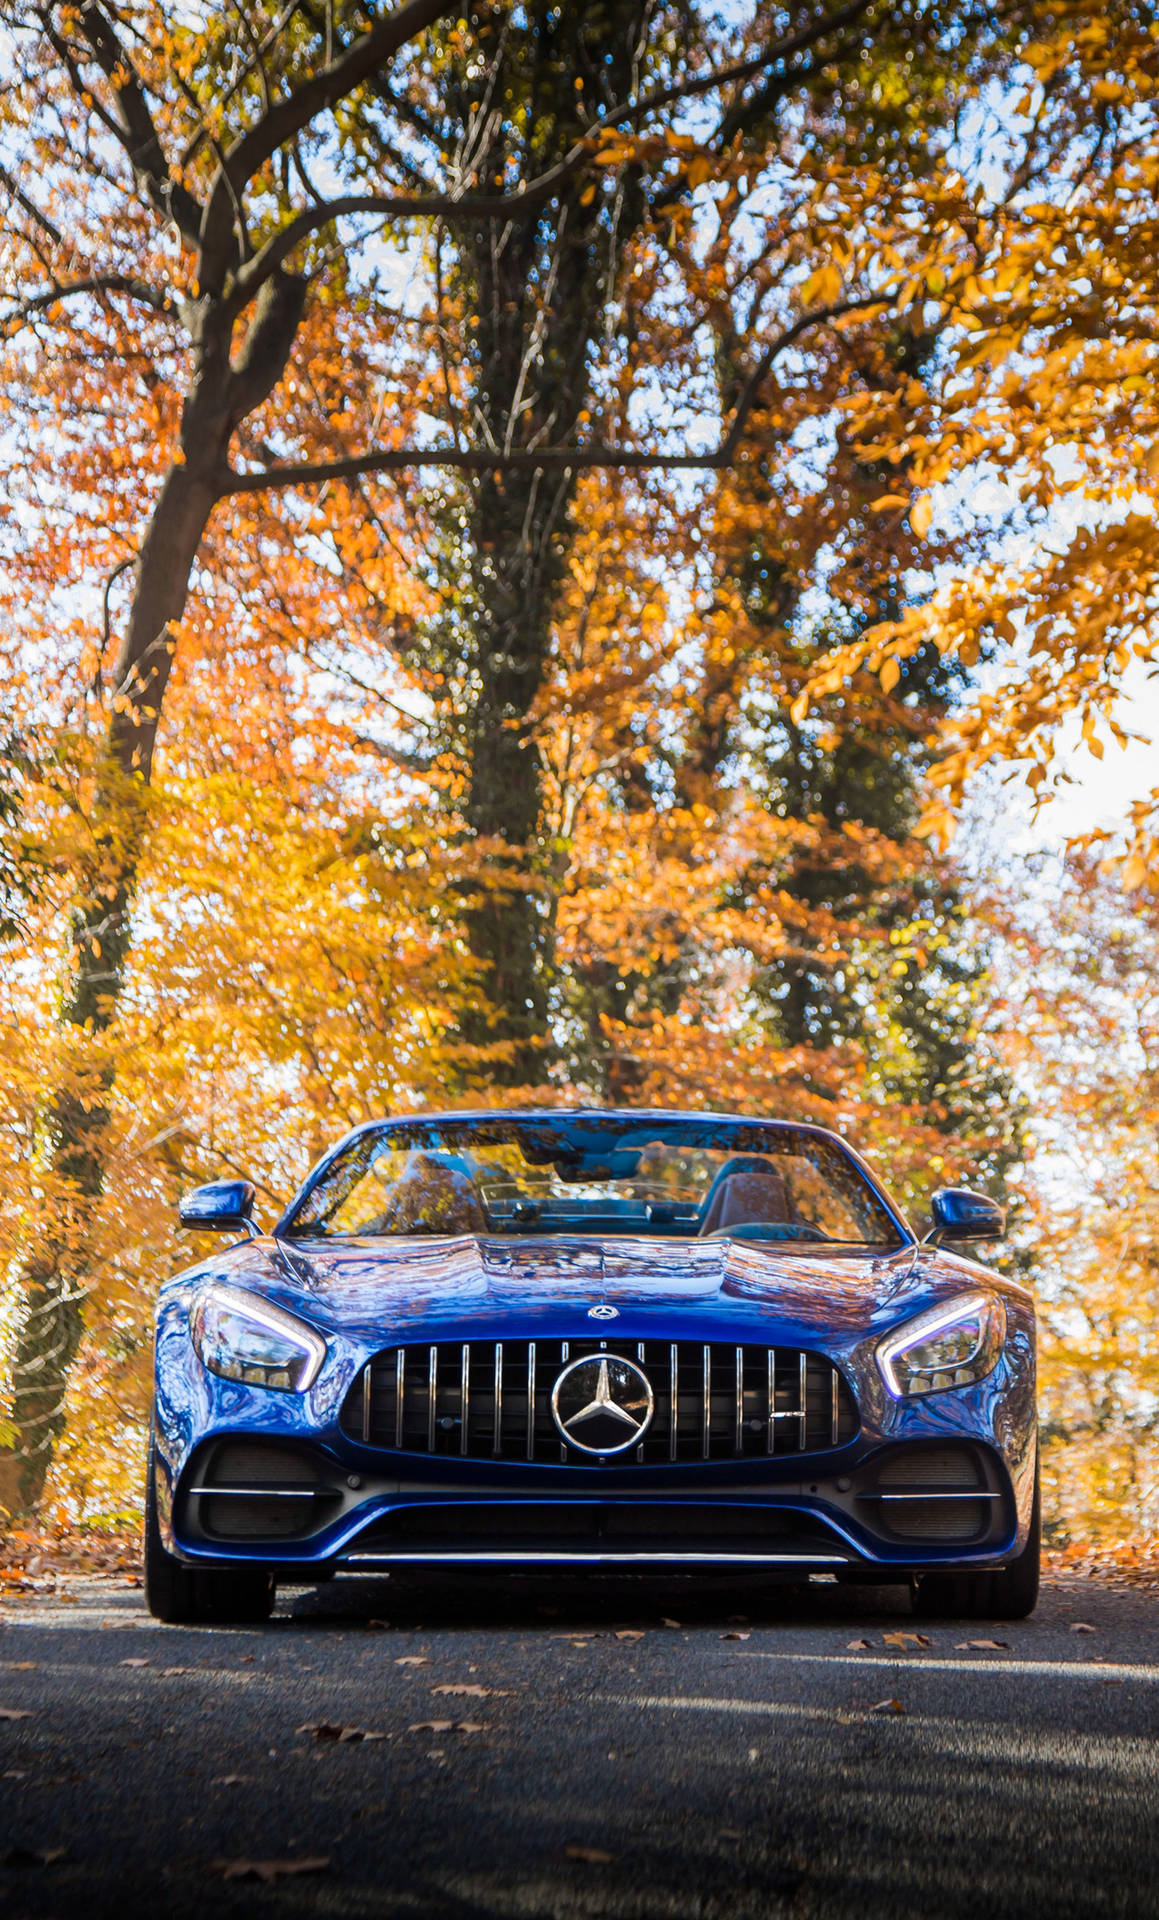 Fondode Pantalla Para Iphone Con Mercedes Benz Amg En Color Azul. Fondo de pantalla